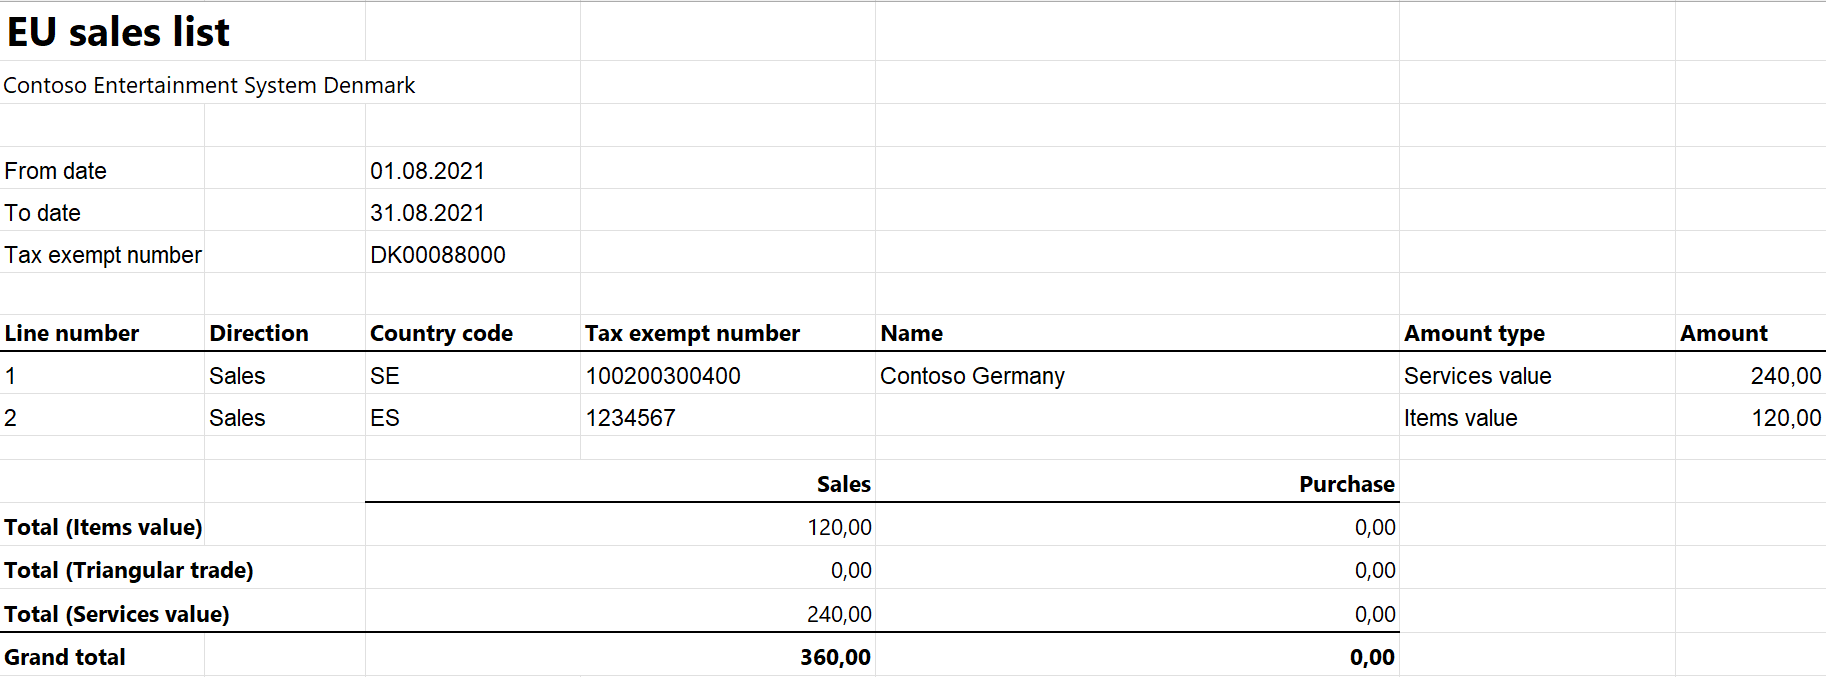 eusl report in Excel for Denmark